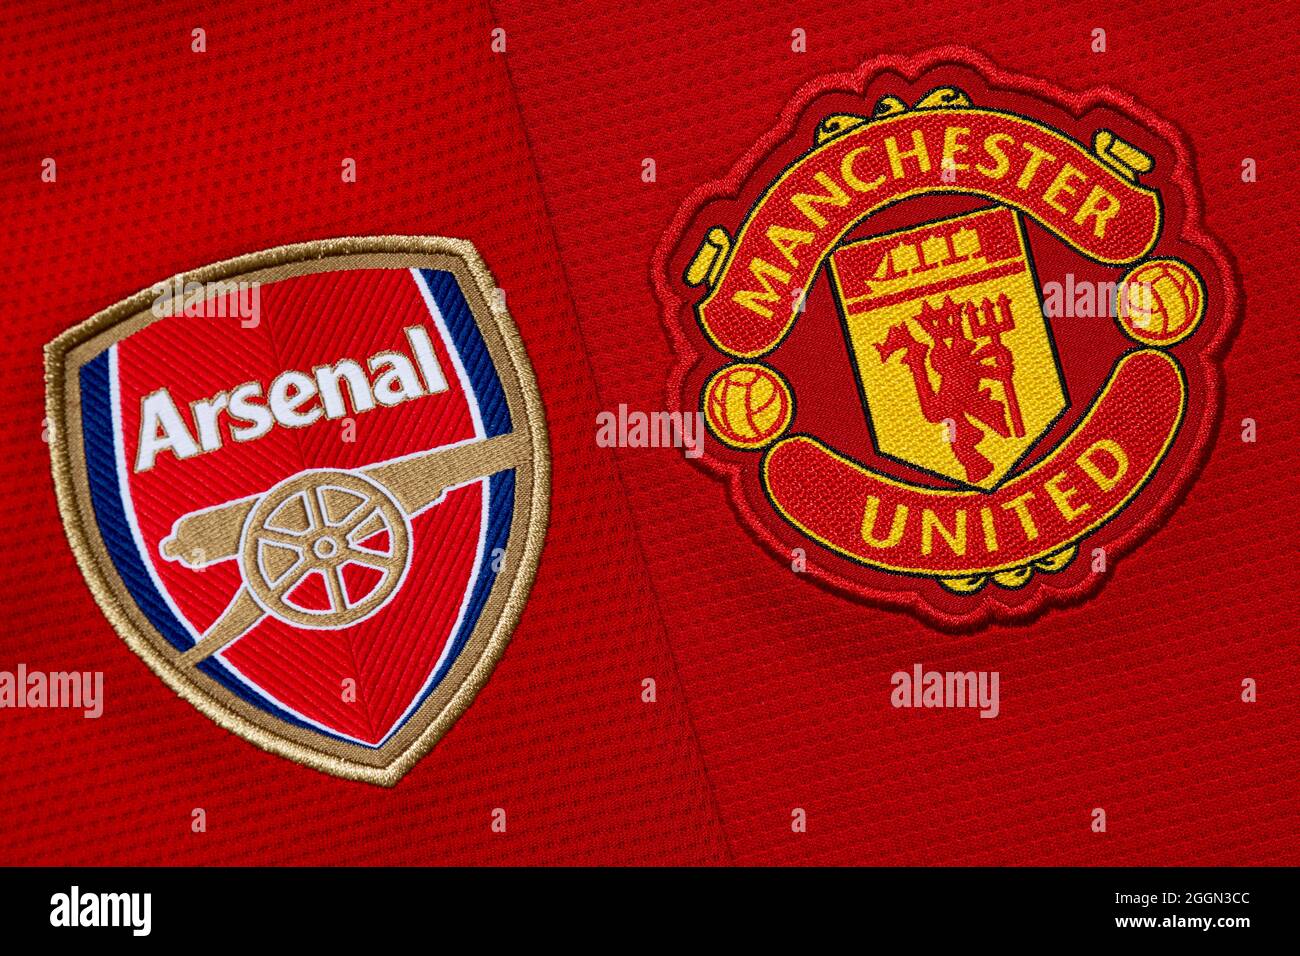 Nahaufnahme des Vereinswappens von Manchester United & Arsenal. Stockfoto